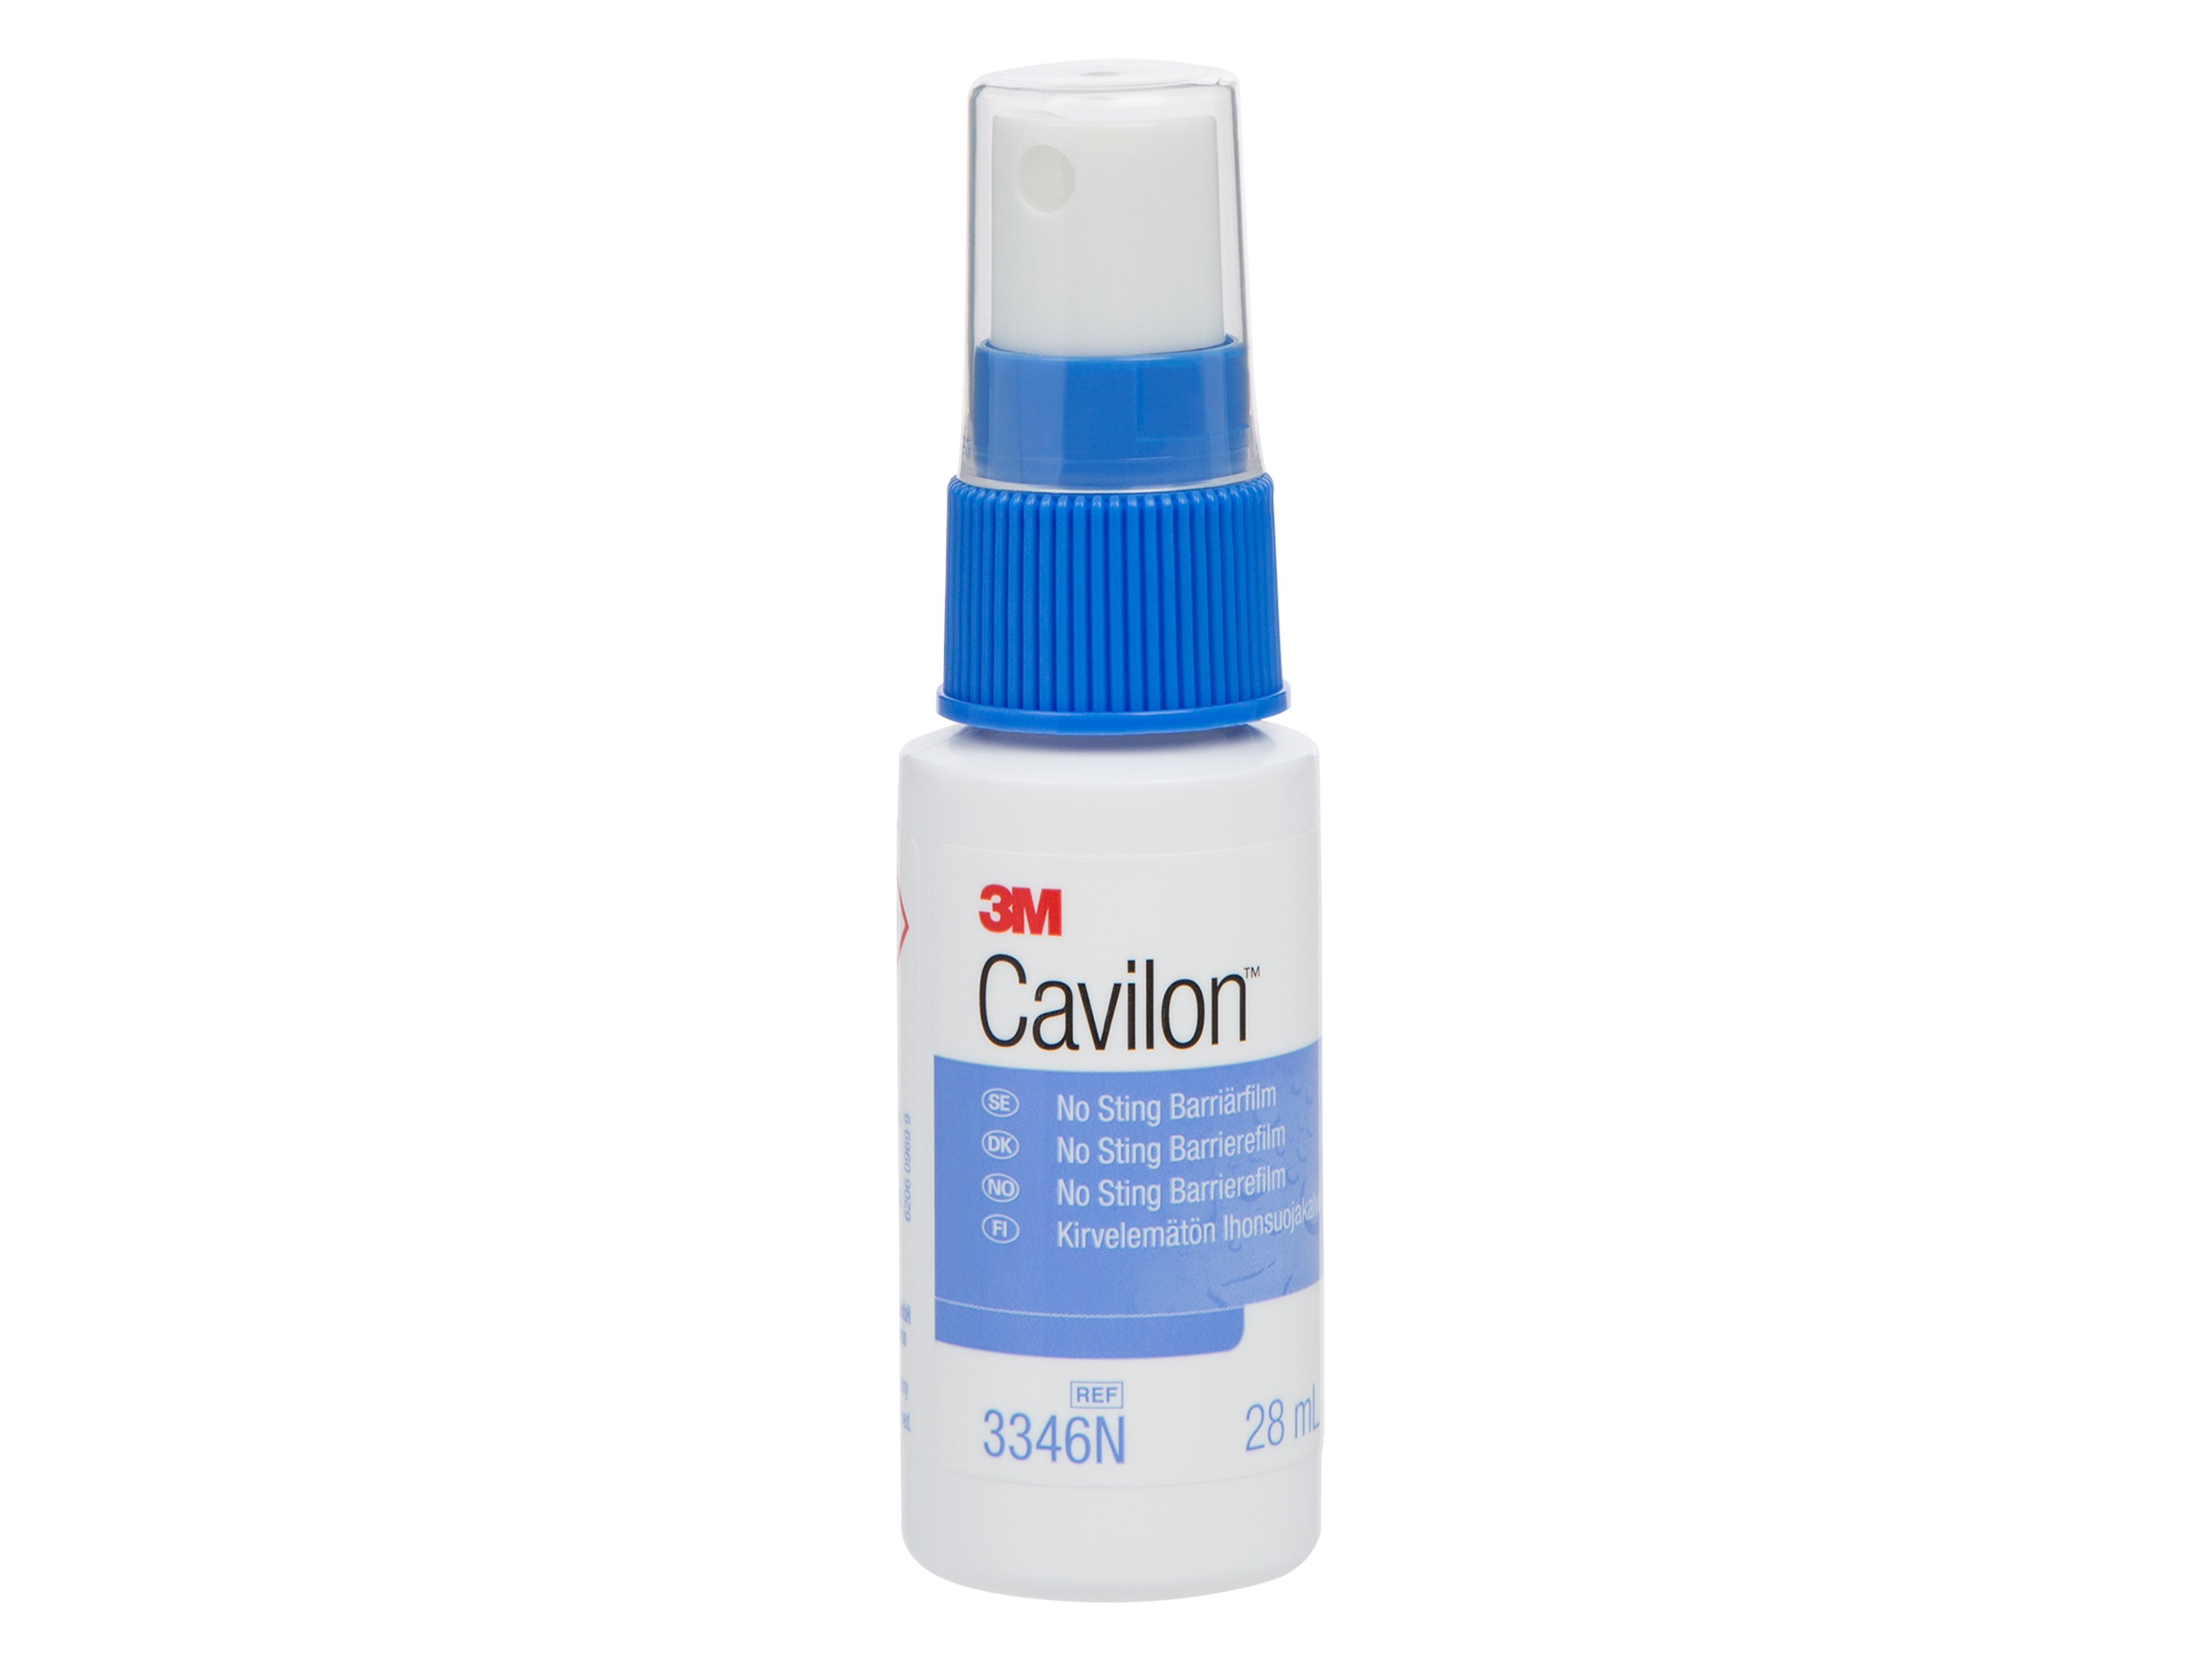 Cavilon Barrierefilm sprayflaske, 28 ml